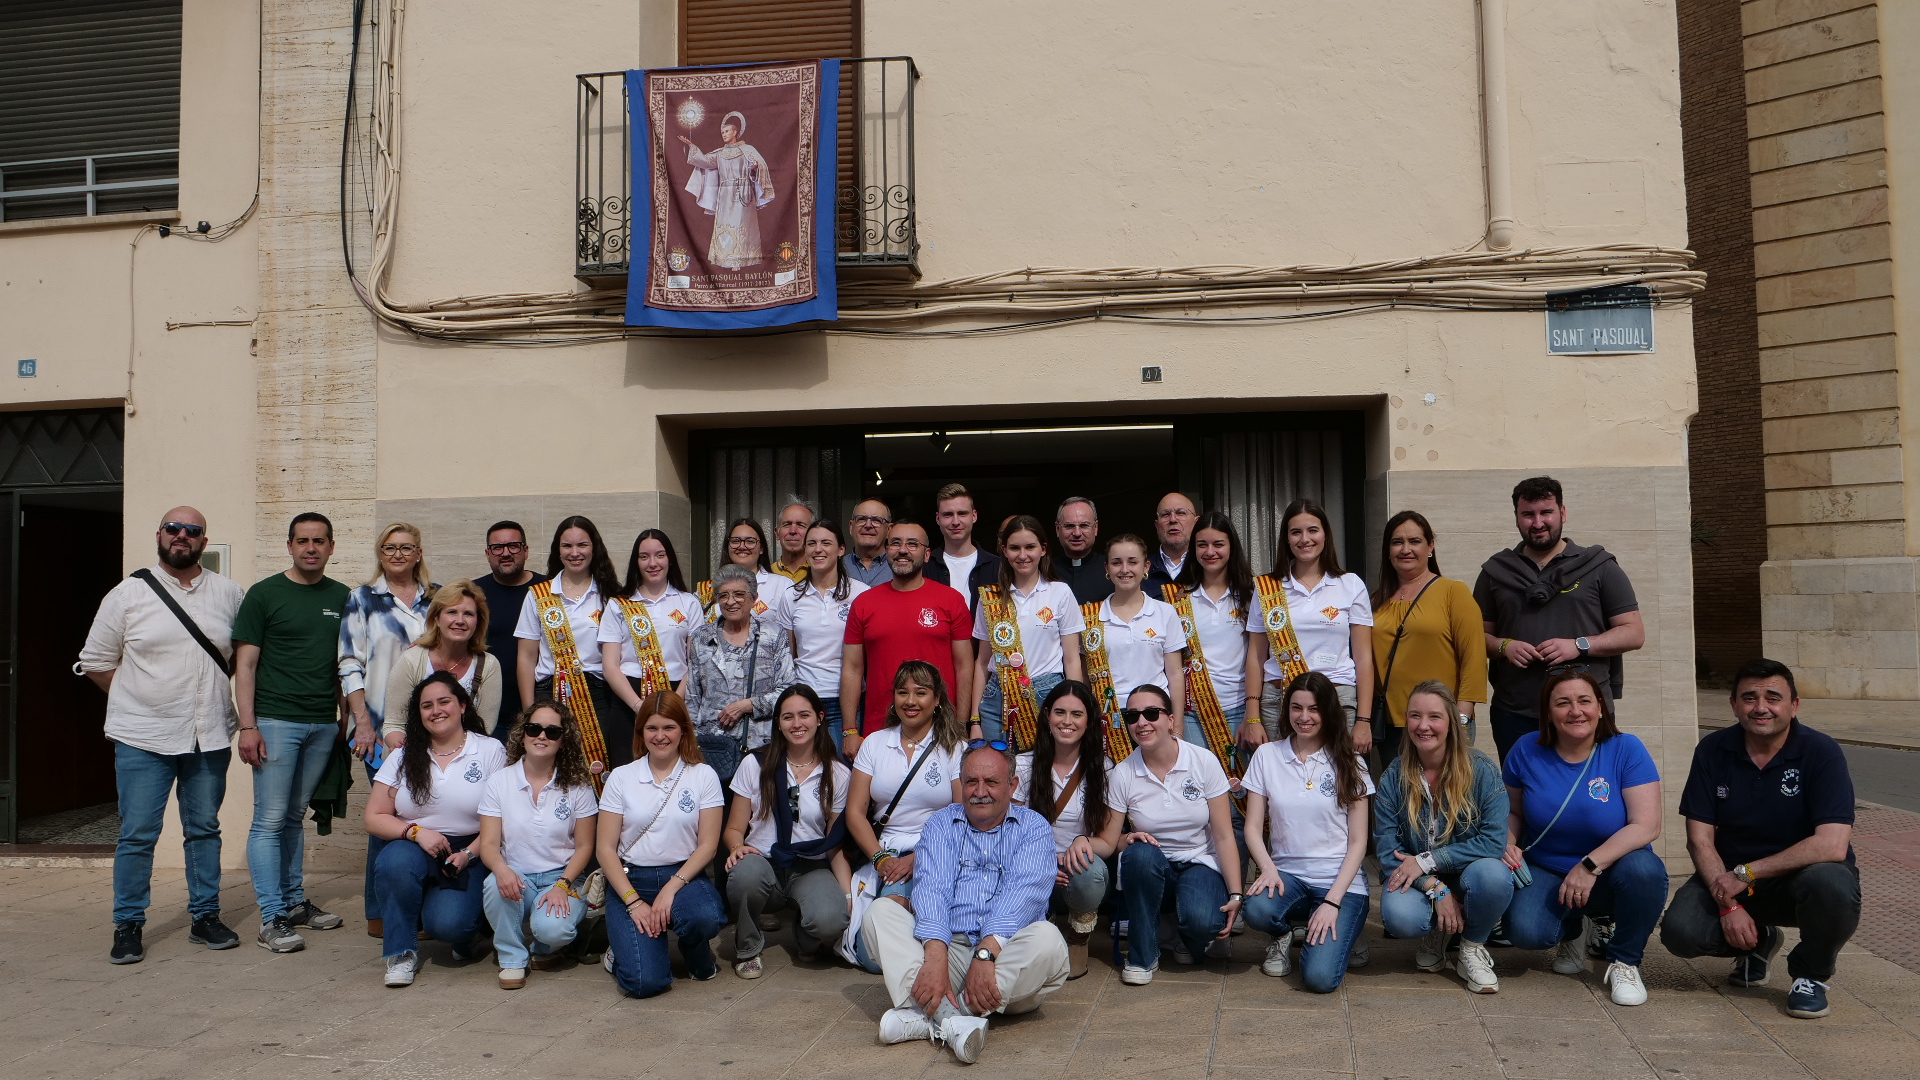 L’alcalde de Vila-real, José Benlloch, reina i dames de les festes i regidors de la corporació municipal van inaugurar la exposició de la Congregració de la Puríssima